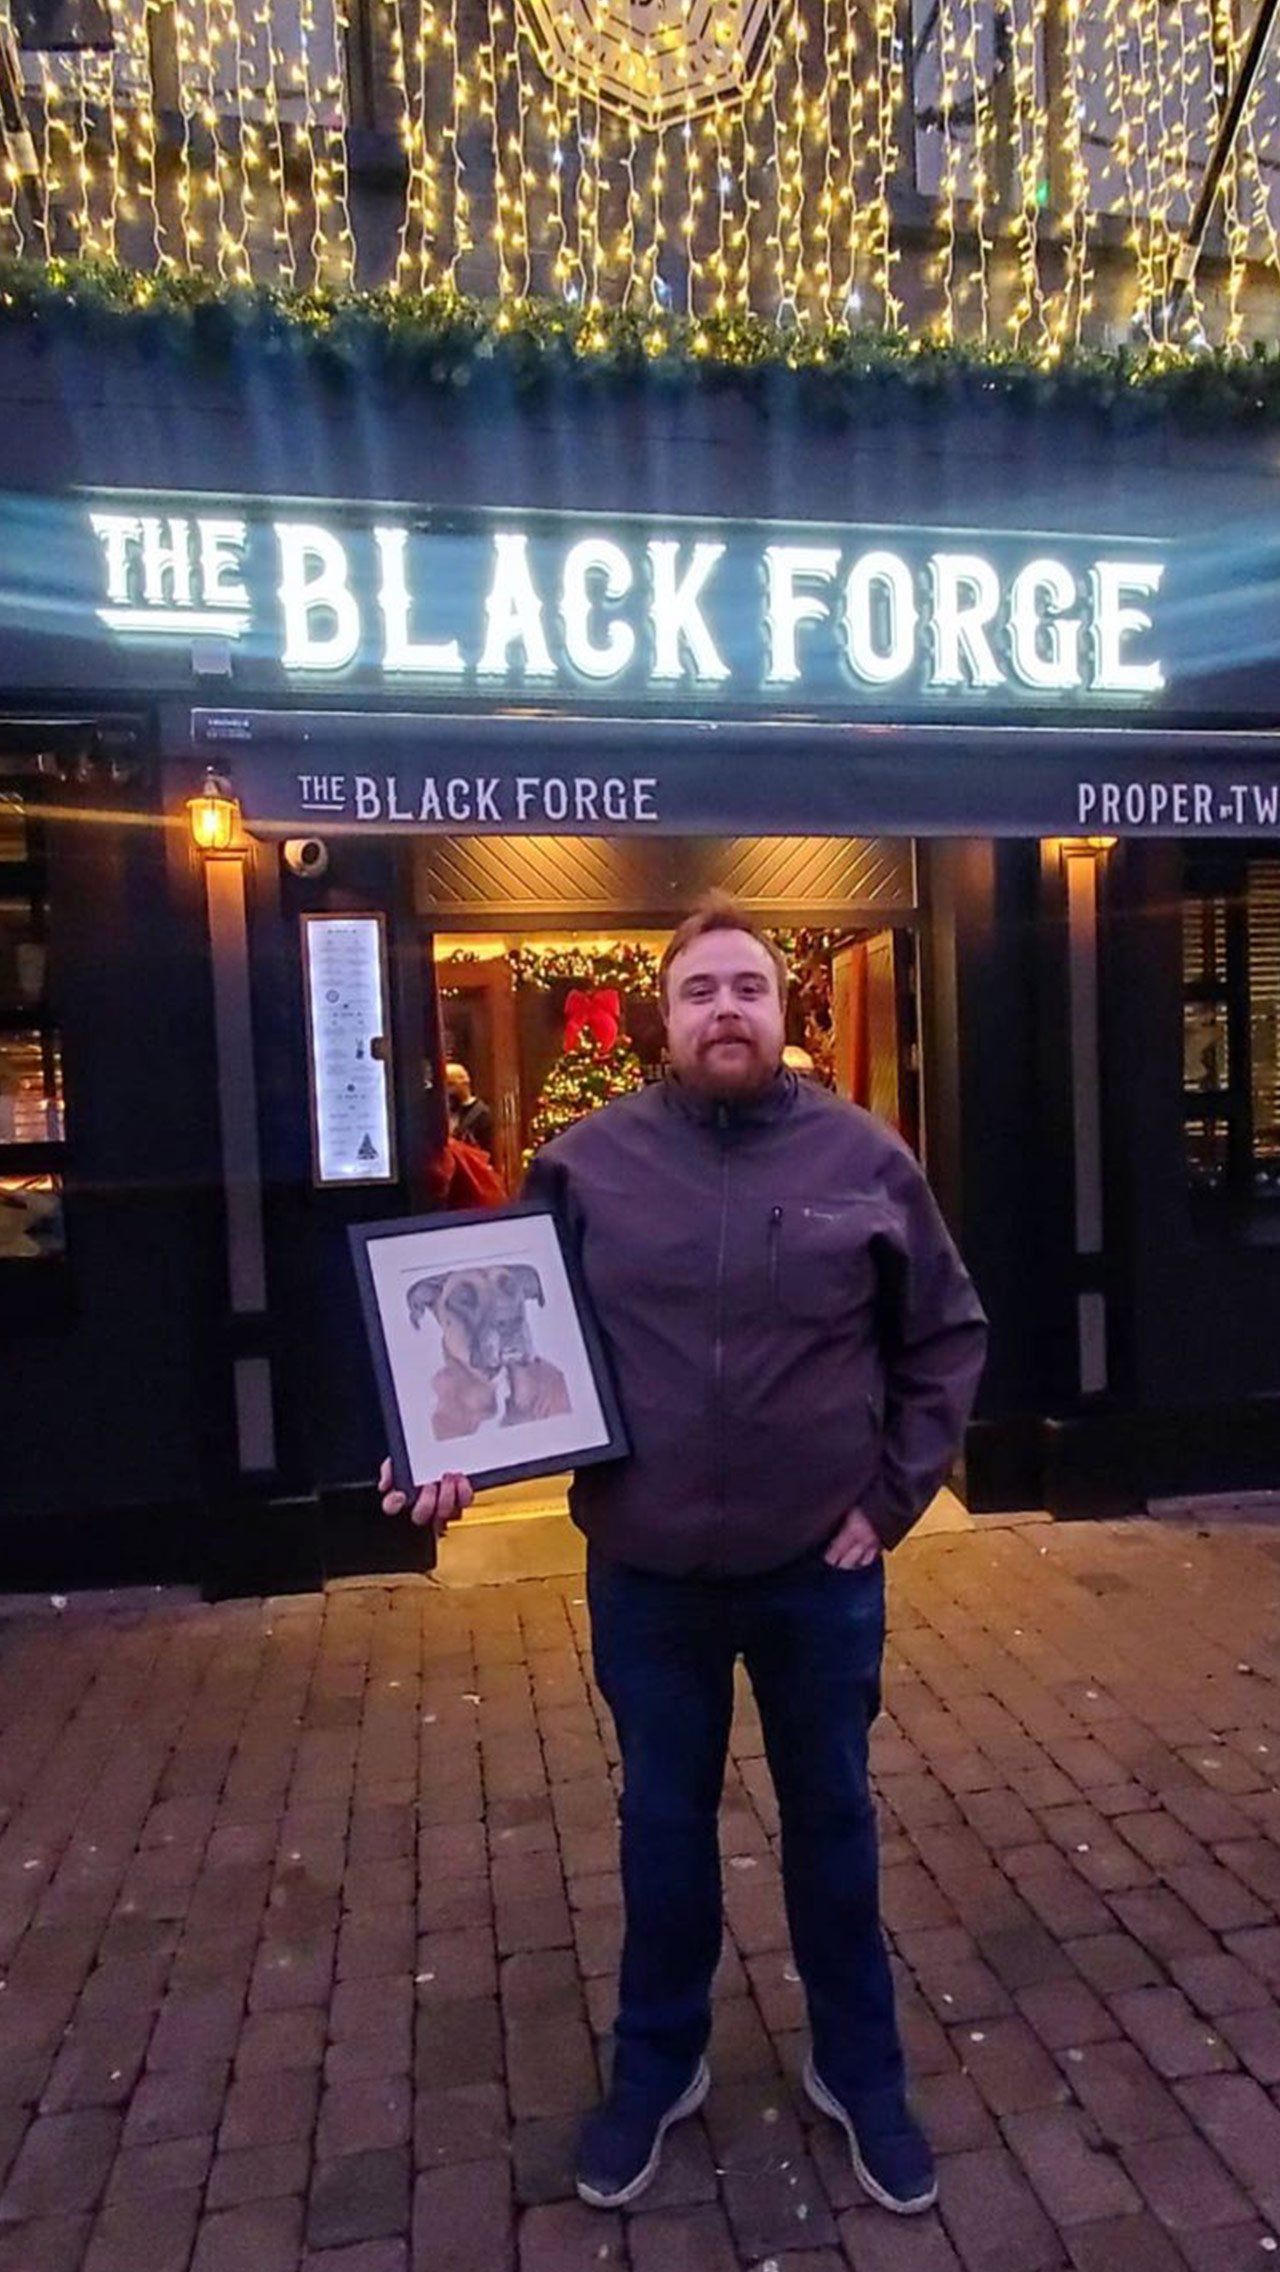 «Выпил пинту пива в Black Forge в память о Хьюго. Лучший друг, мы будем очень скучать по тебе. Спасибо Black Forge за приглашение. Чудесный день», — сказал Johnnerdraws.